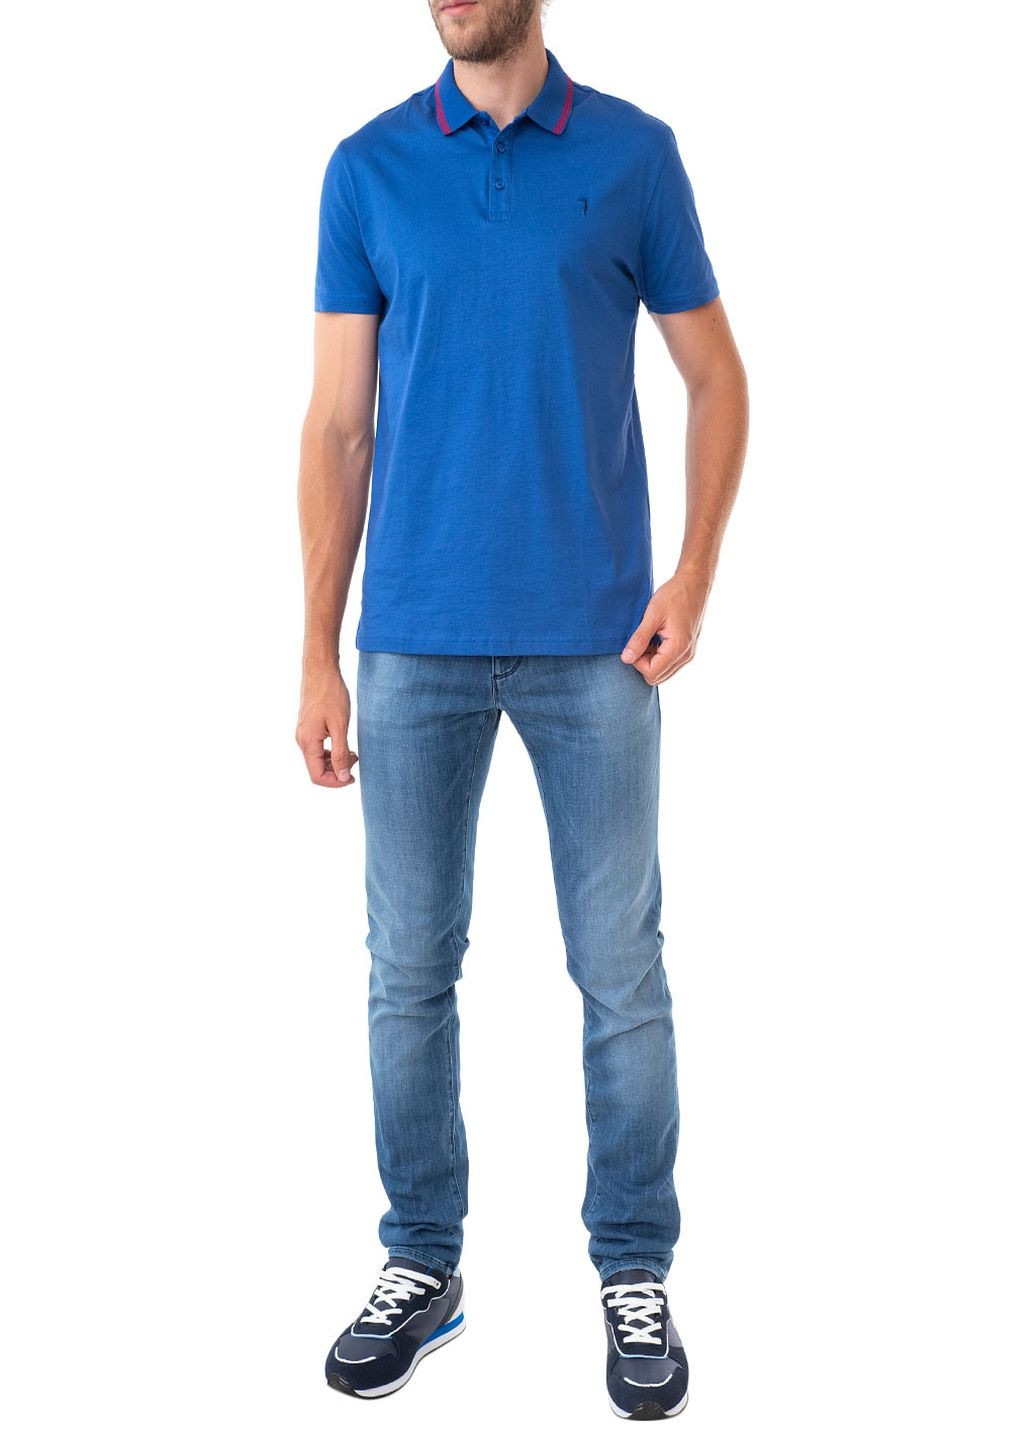 Синяя футболка-поло для мужчин Trussardi Jeans однотонная